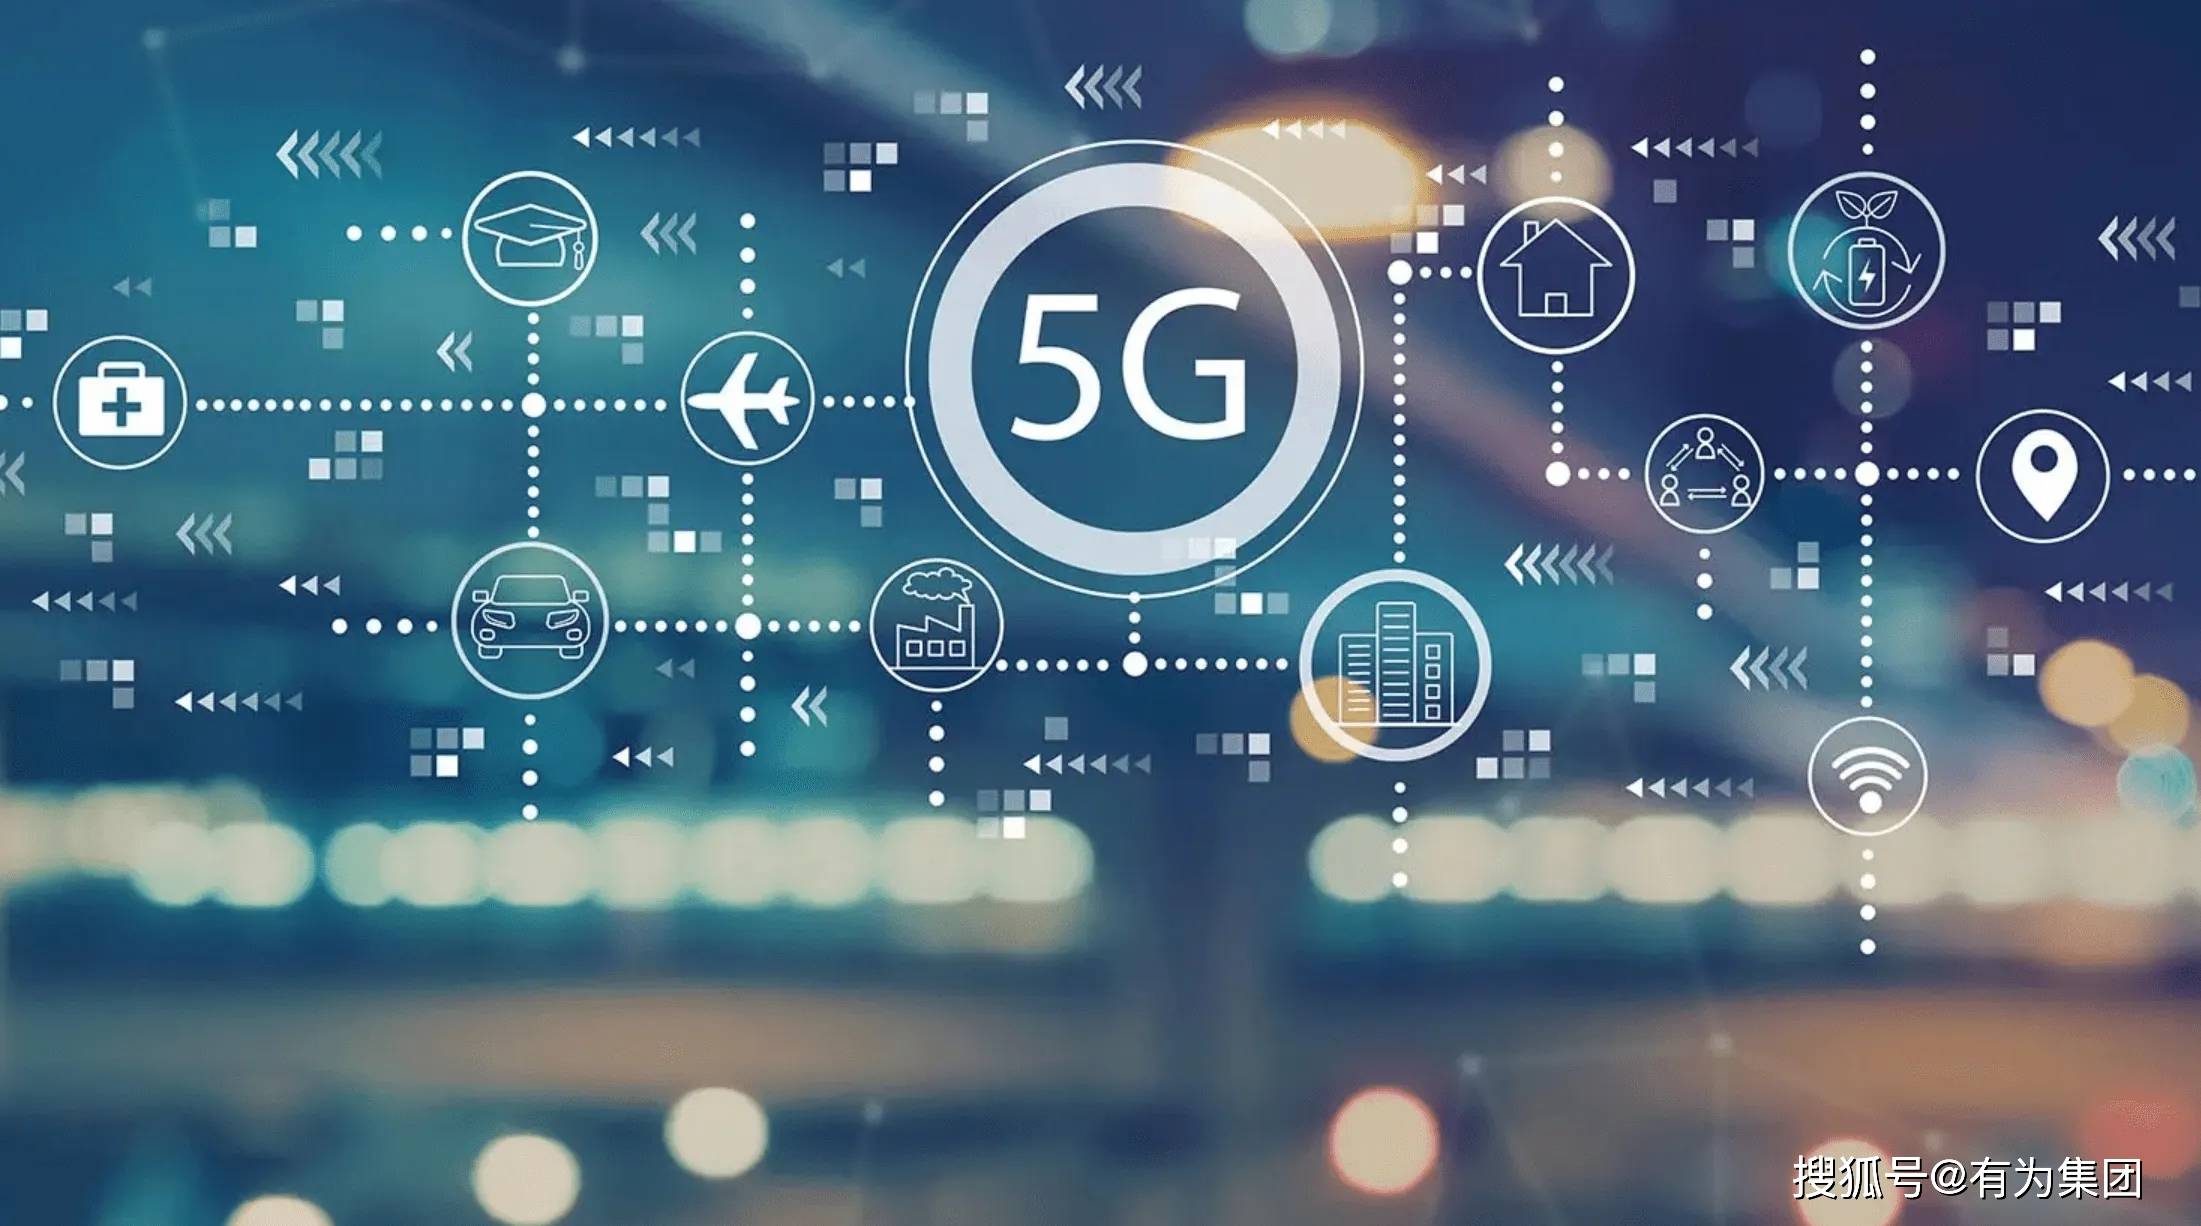 安徽省 5G 智能手机市场竞争激烈，各品牌角逐，技术变革影响生活方式  第7张